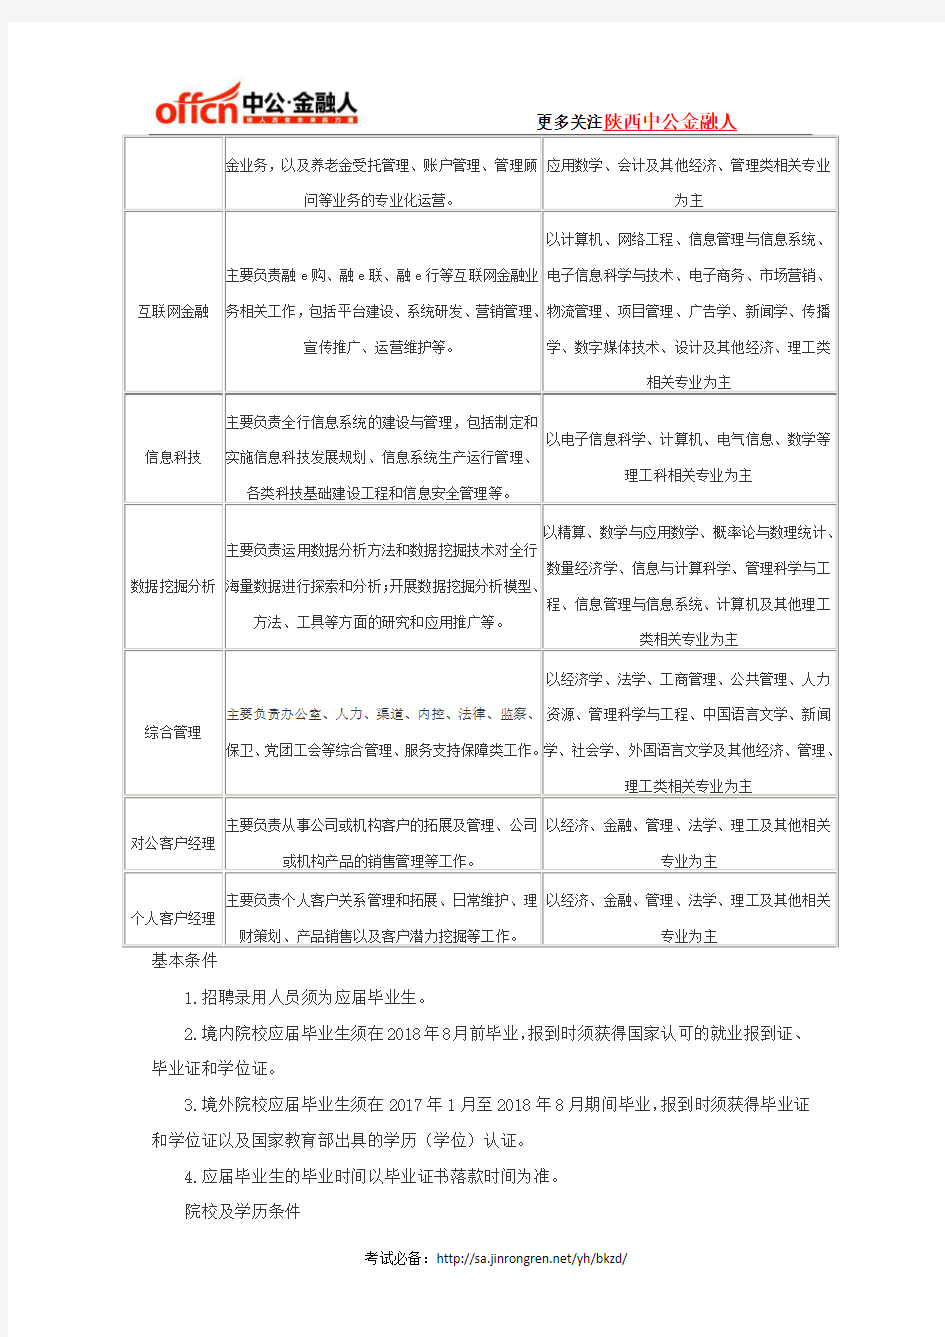 2019中国工商银行校园招聘报考条件(陕西分行)